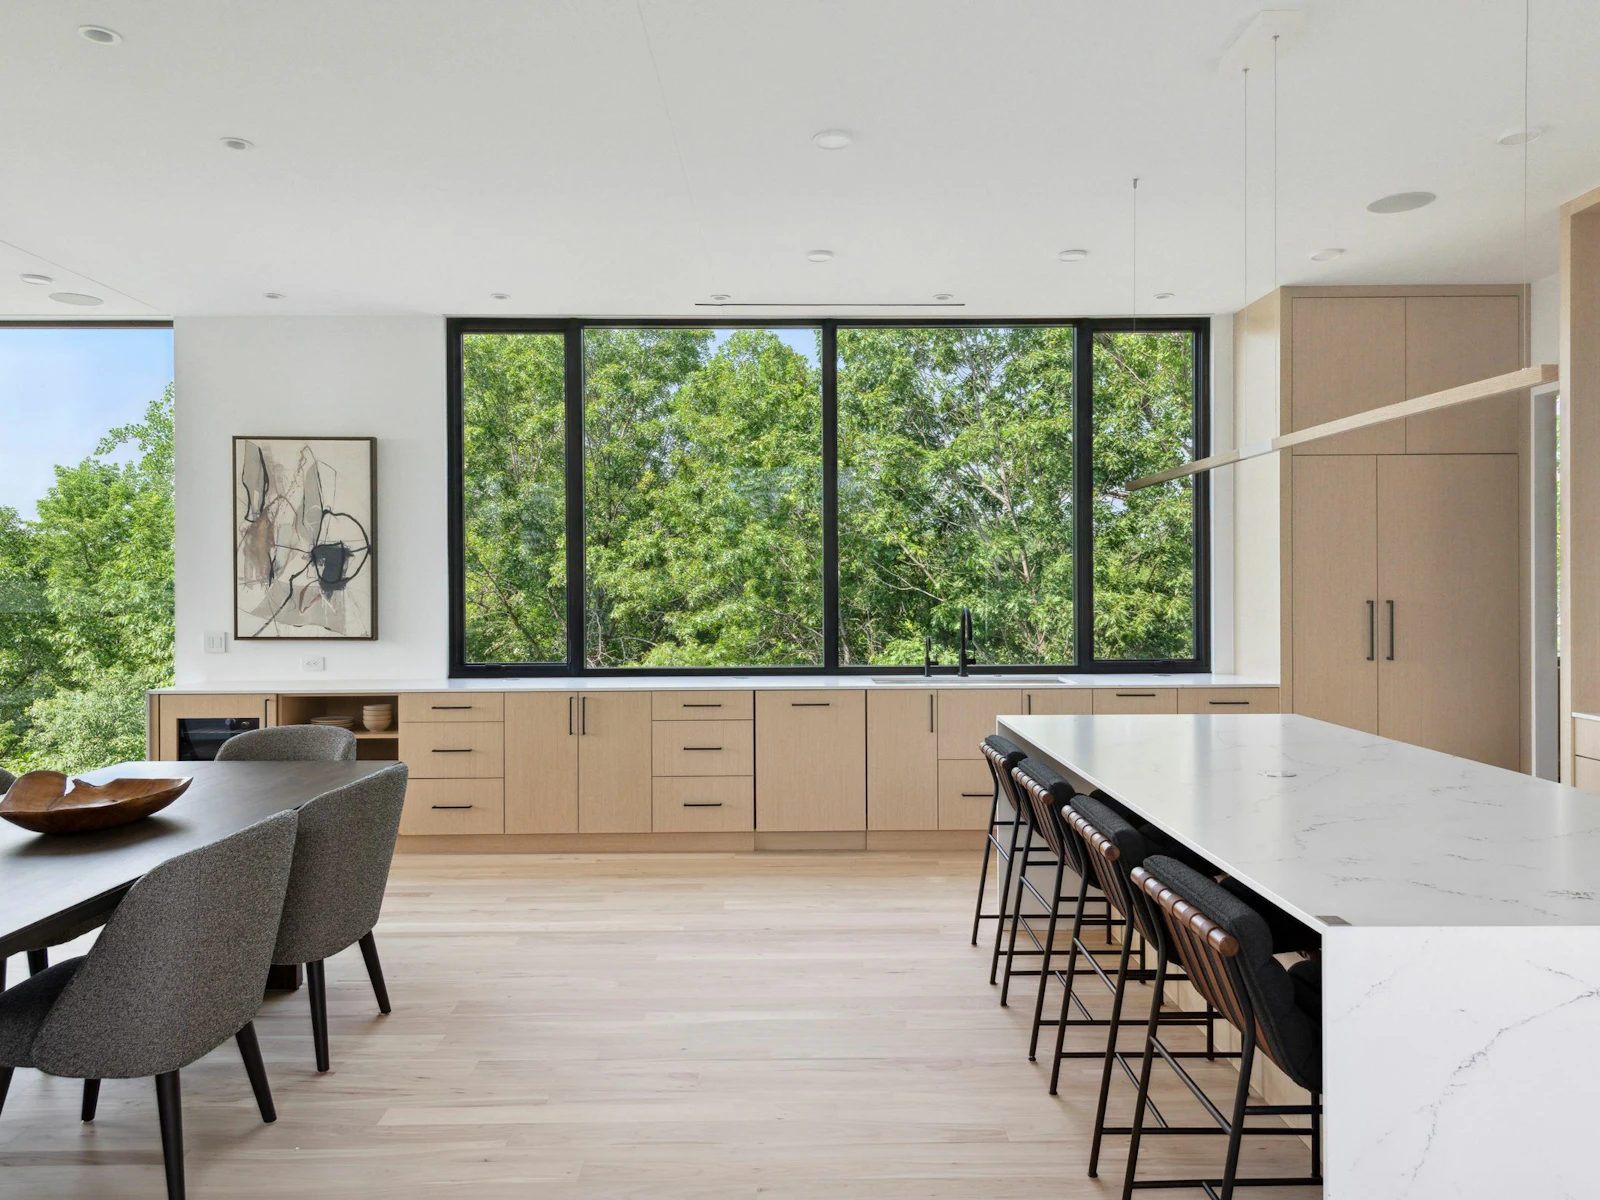 Scandinavian inspired kitchen with an open floor plan